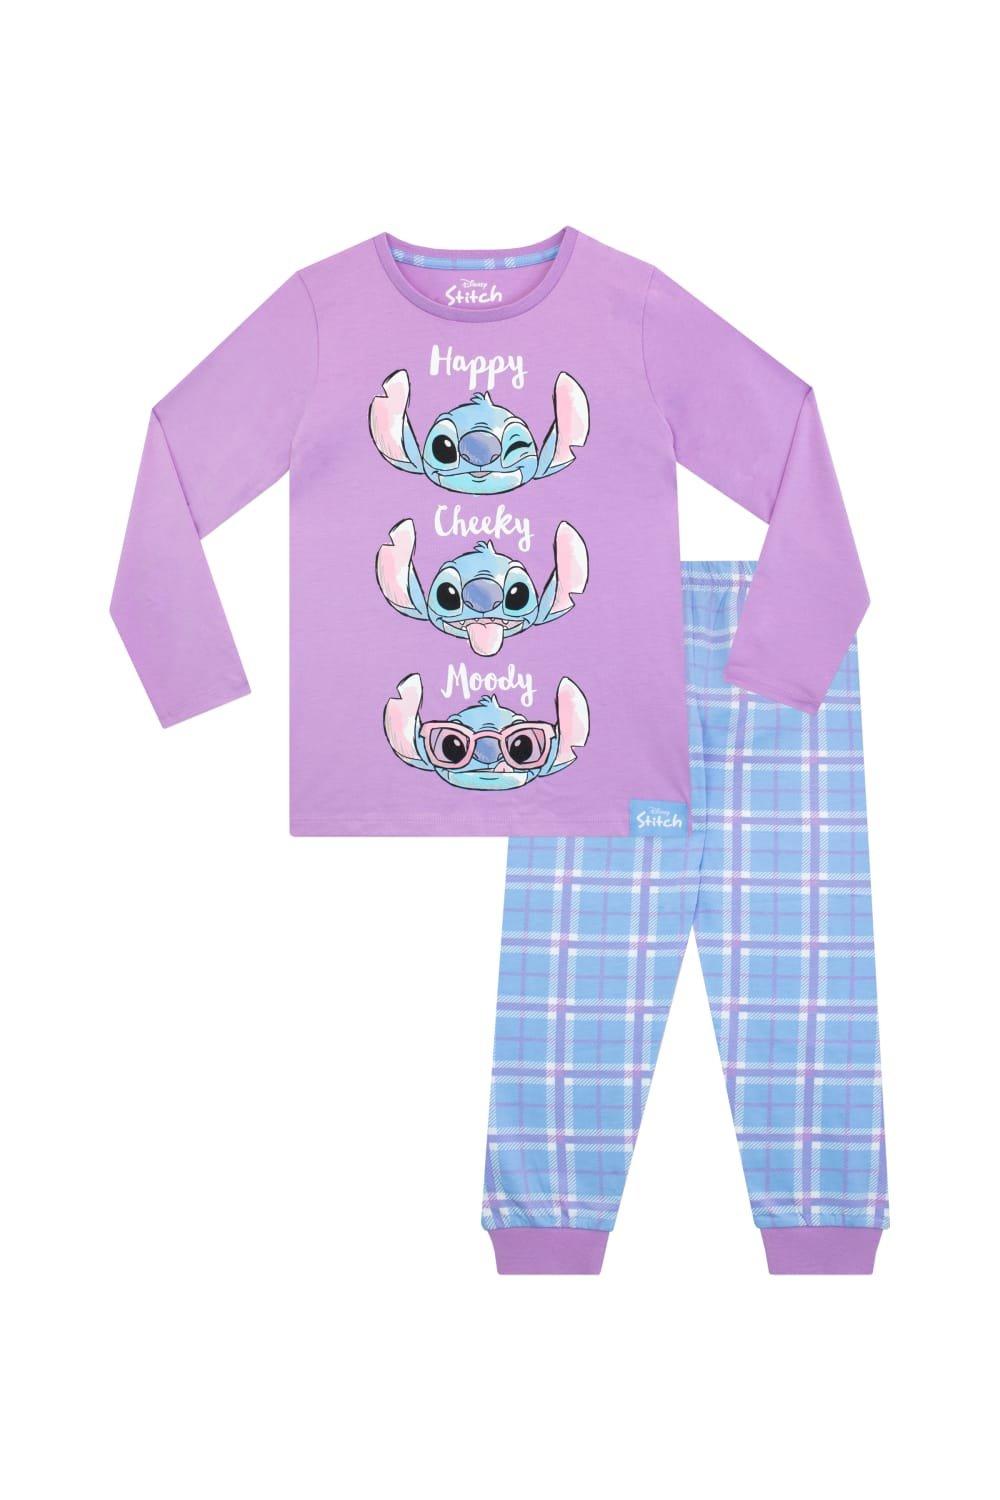 школьная сумка лило и стич disney фиолетовый Пижама Лило и Стич Disney, фиолетовый